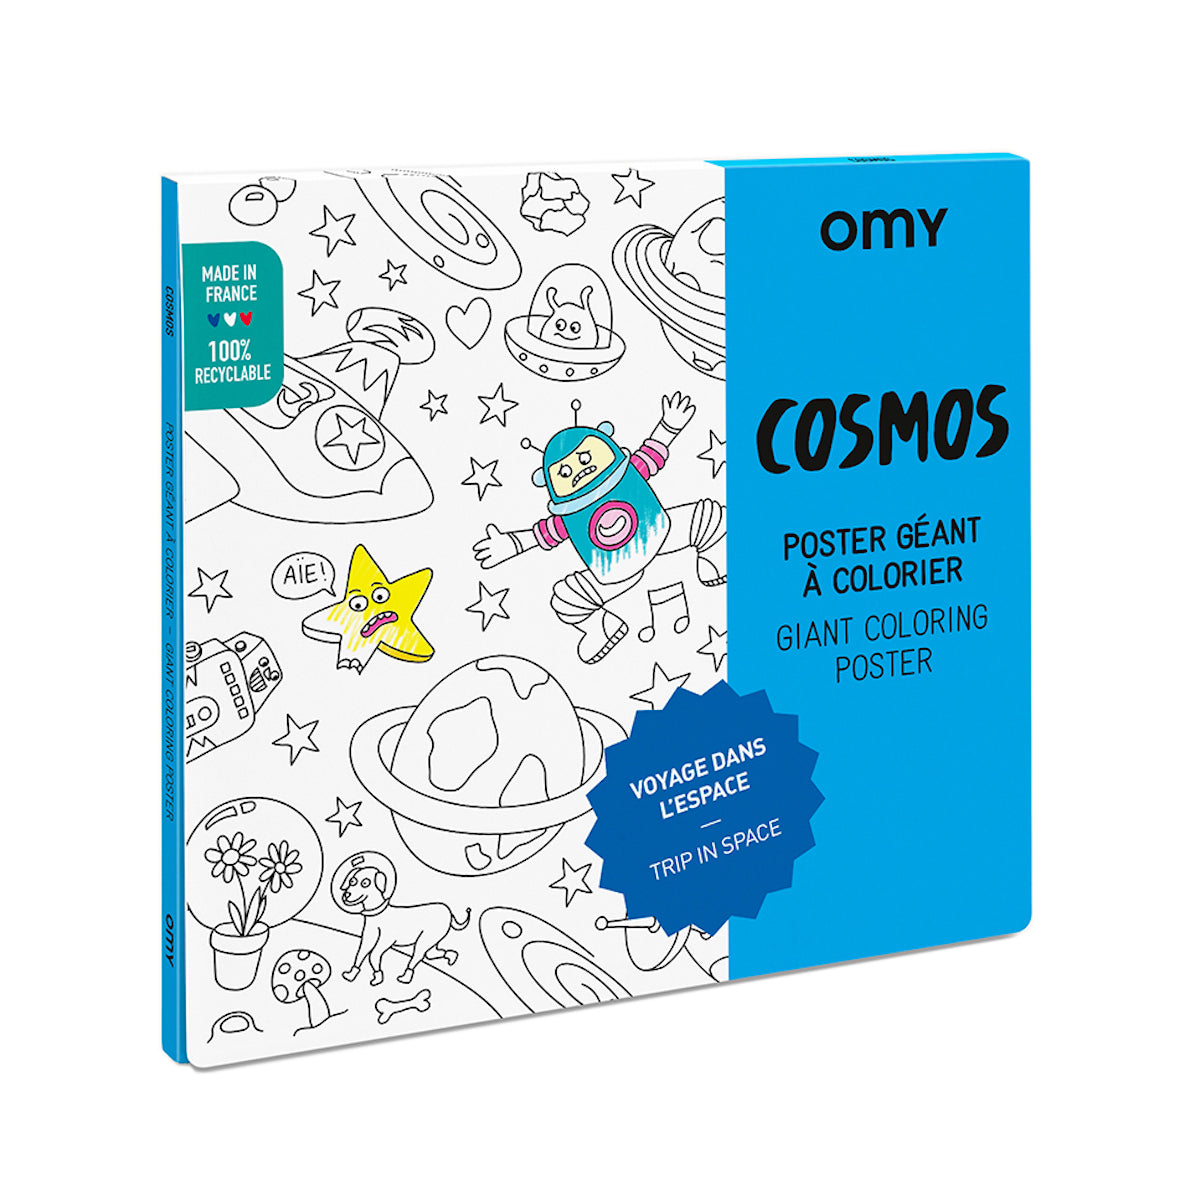 De OMY kleurposter 1 mtr Cosmos zorgt voor heel veel uren kleurplezier. Deze grote themakleurplaat neemt je mee in de wondere wereld van de ruimte. Pak je favoriete viltstiften erbij en ga op avontuur! VanZus.